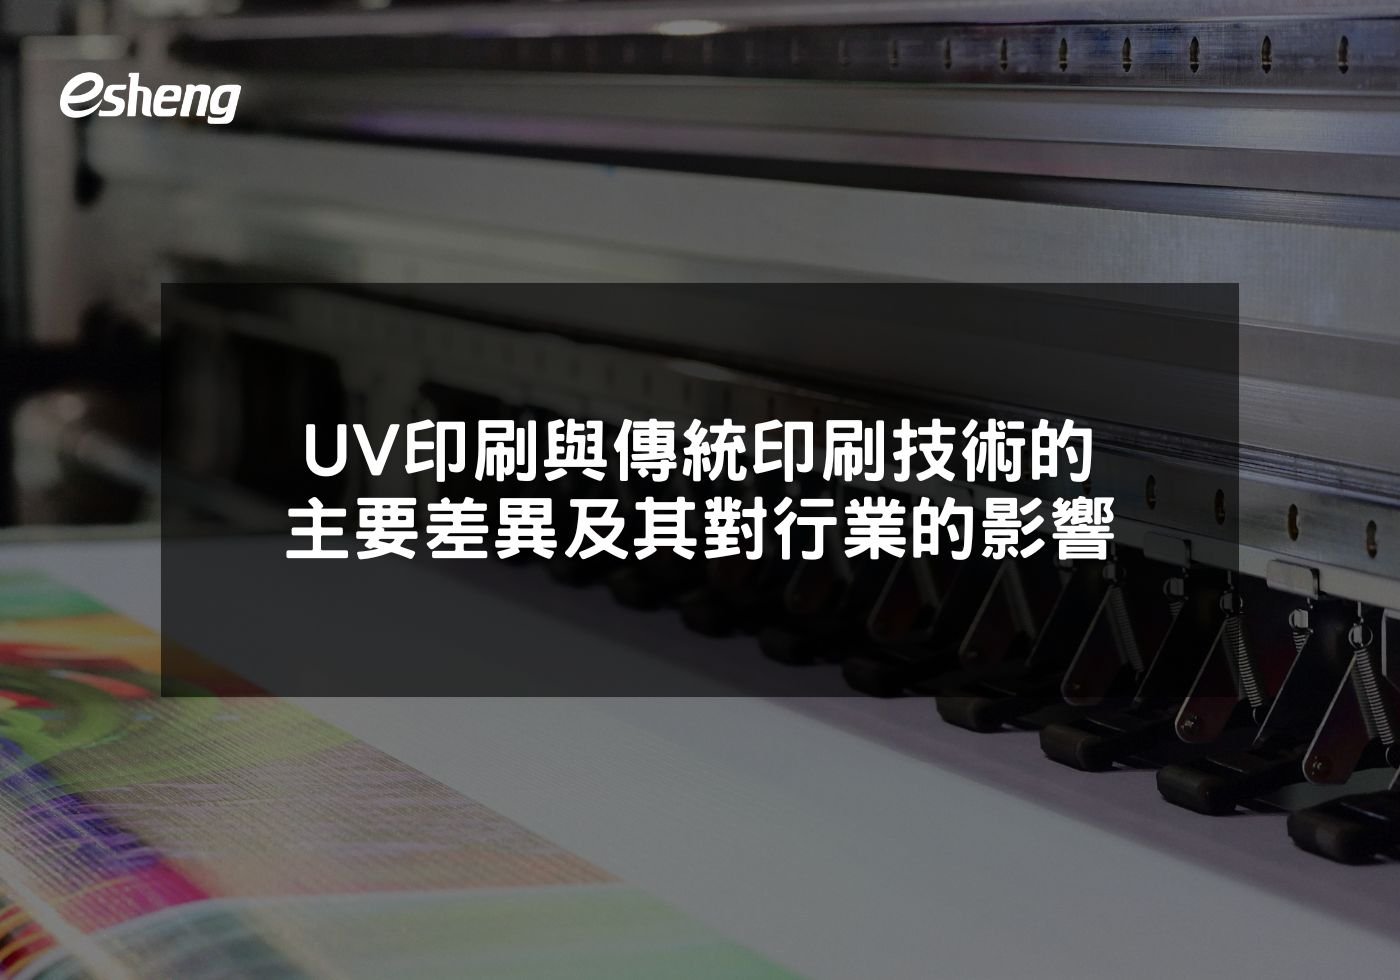 UV印刷與傳統印刷技術的主要差異及其對行業的影響